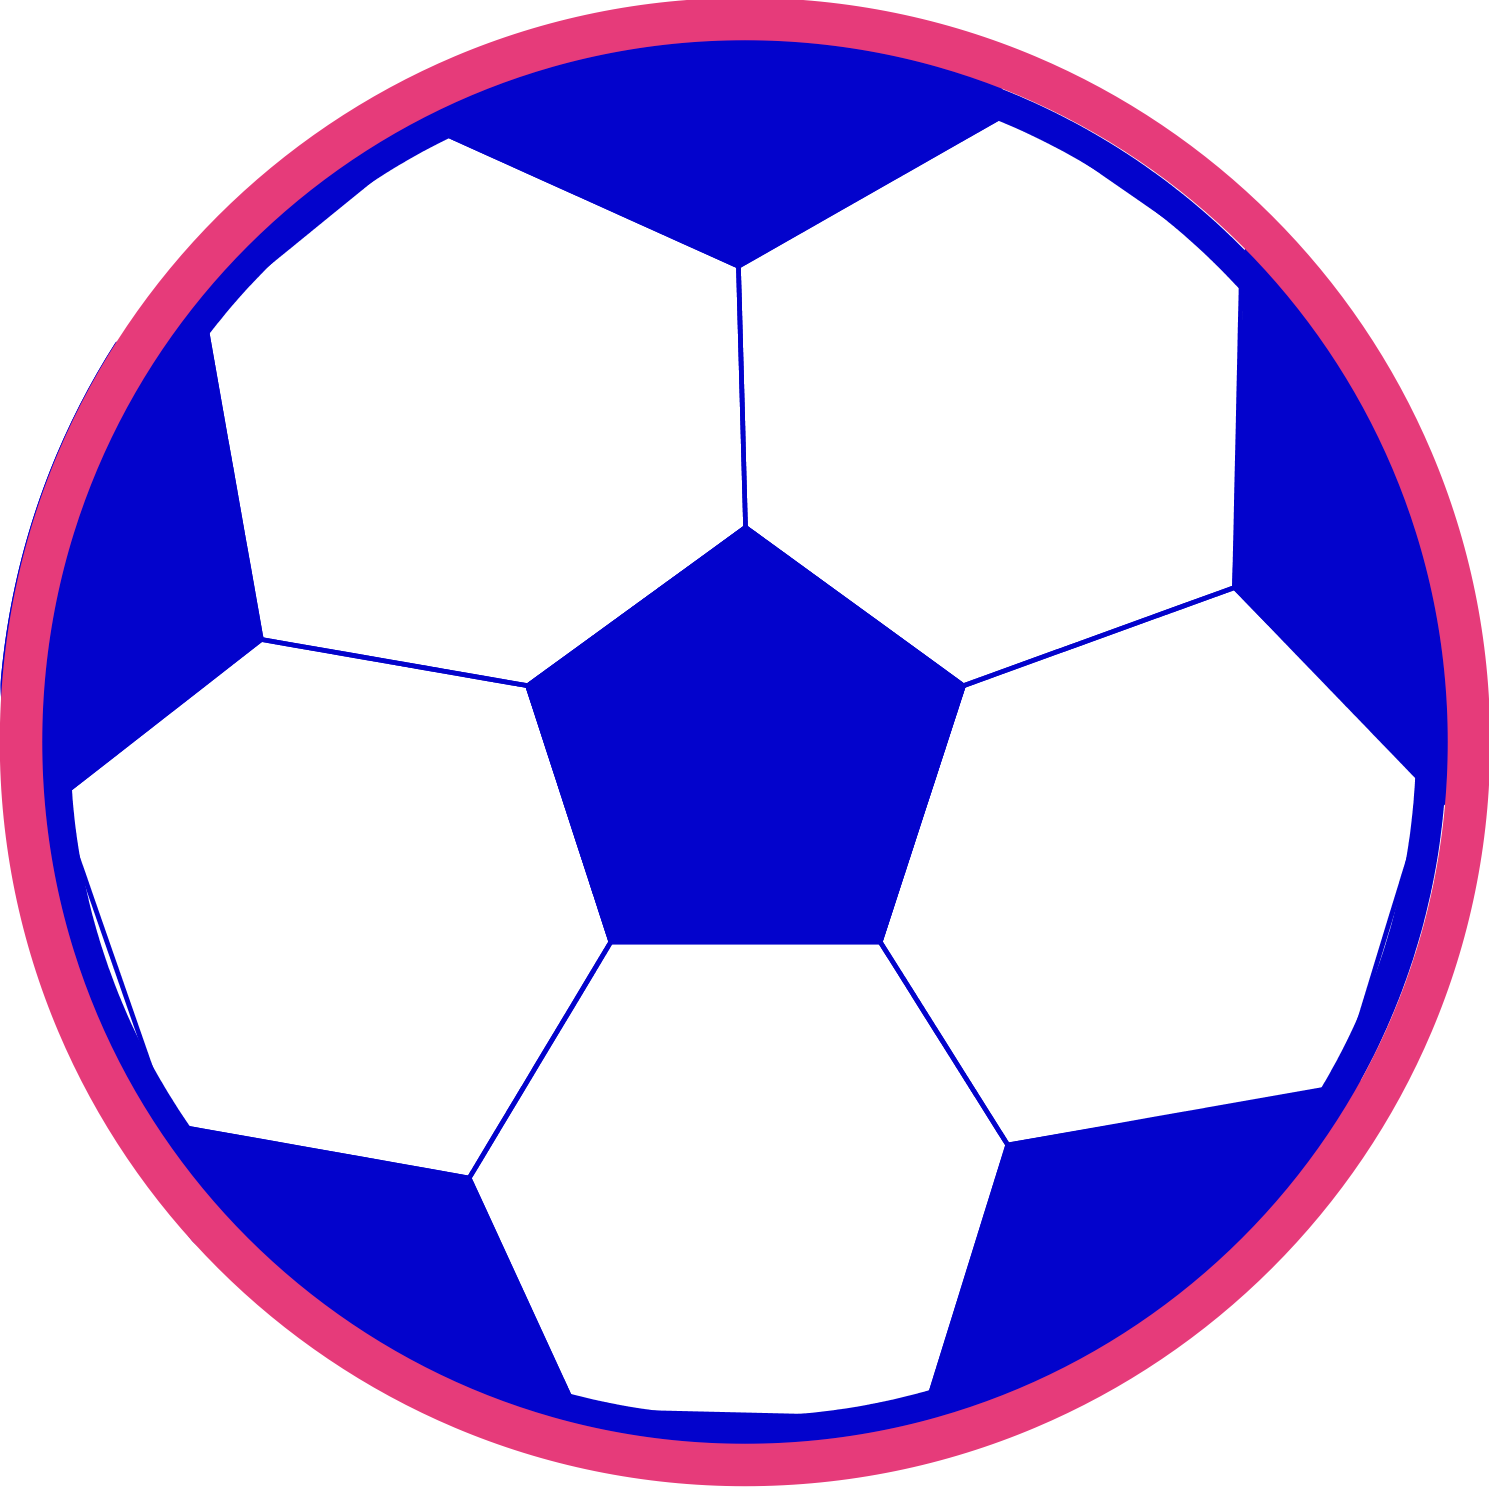 A flat football